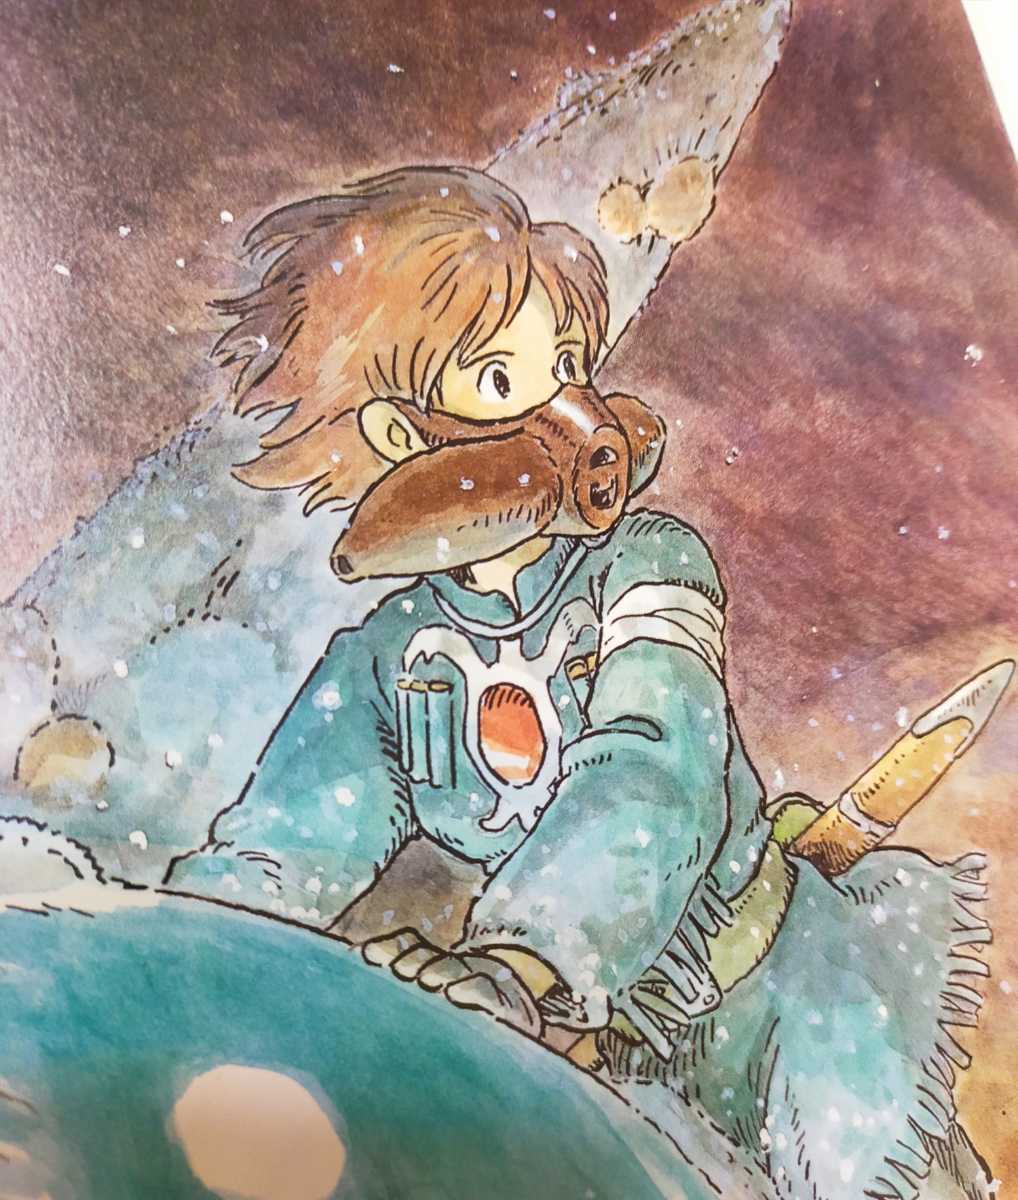 [ рамка товар ] Studio Ghibli Kaze no Tani no Naushika Ghibli официальный альбом с иллюстрациями порез .. Animage акварельная живопись Miyazaki . осмотр ) Ghibli постер. открытка 